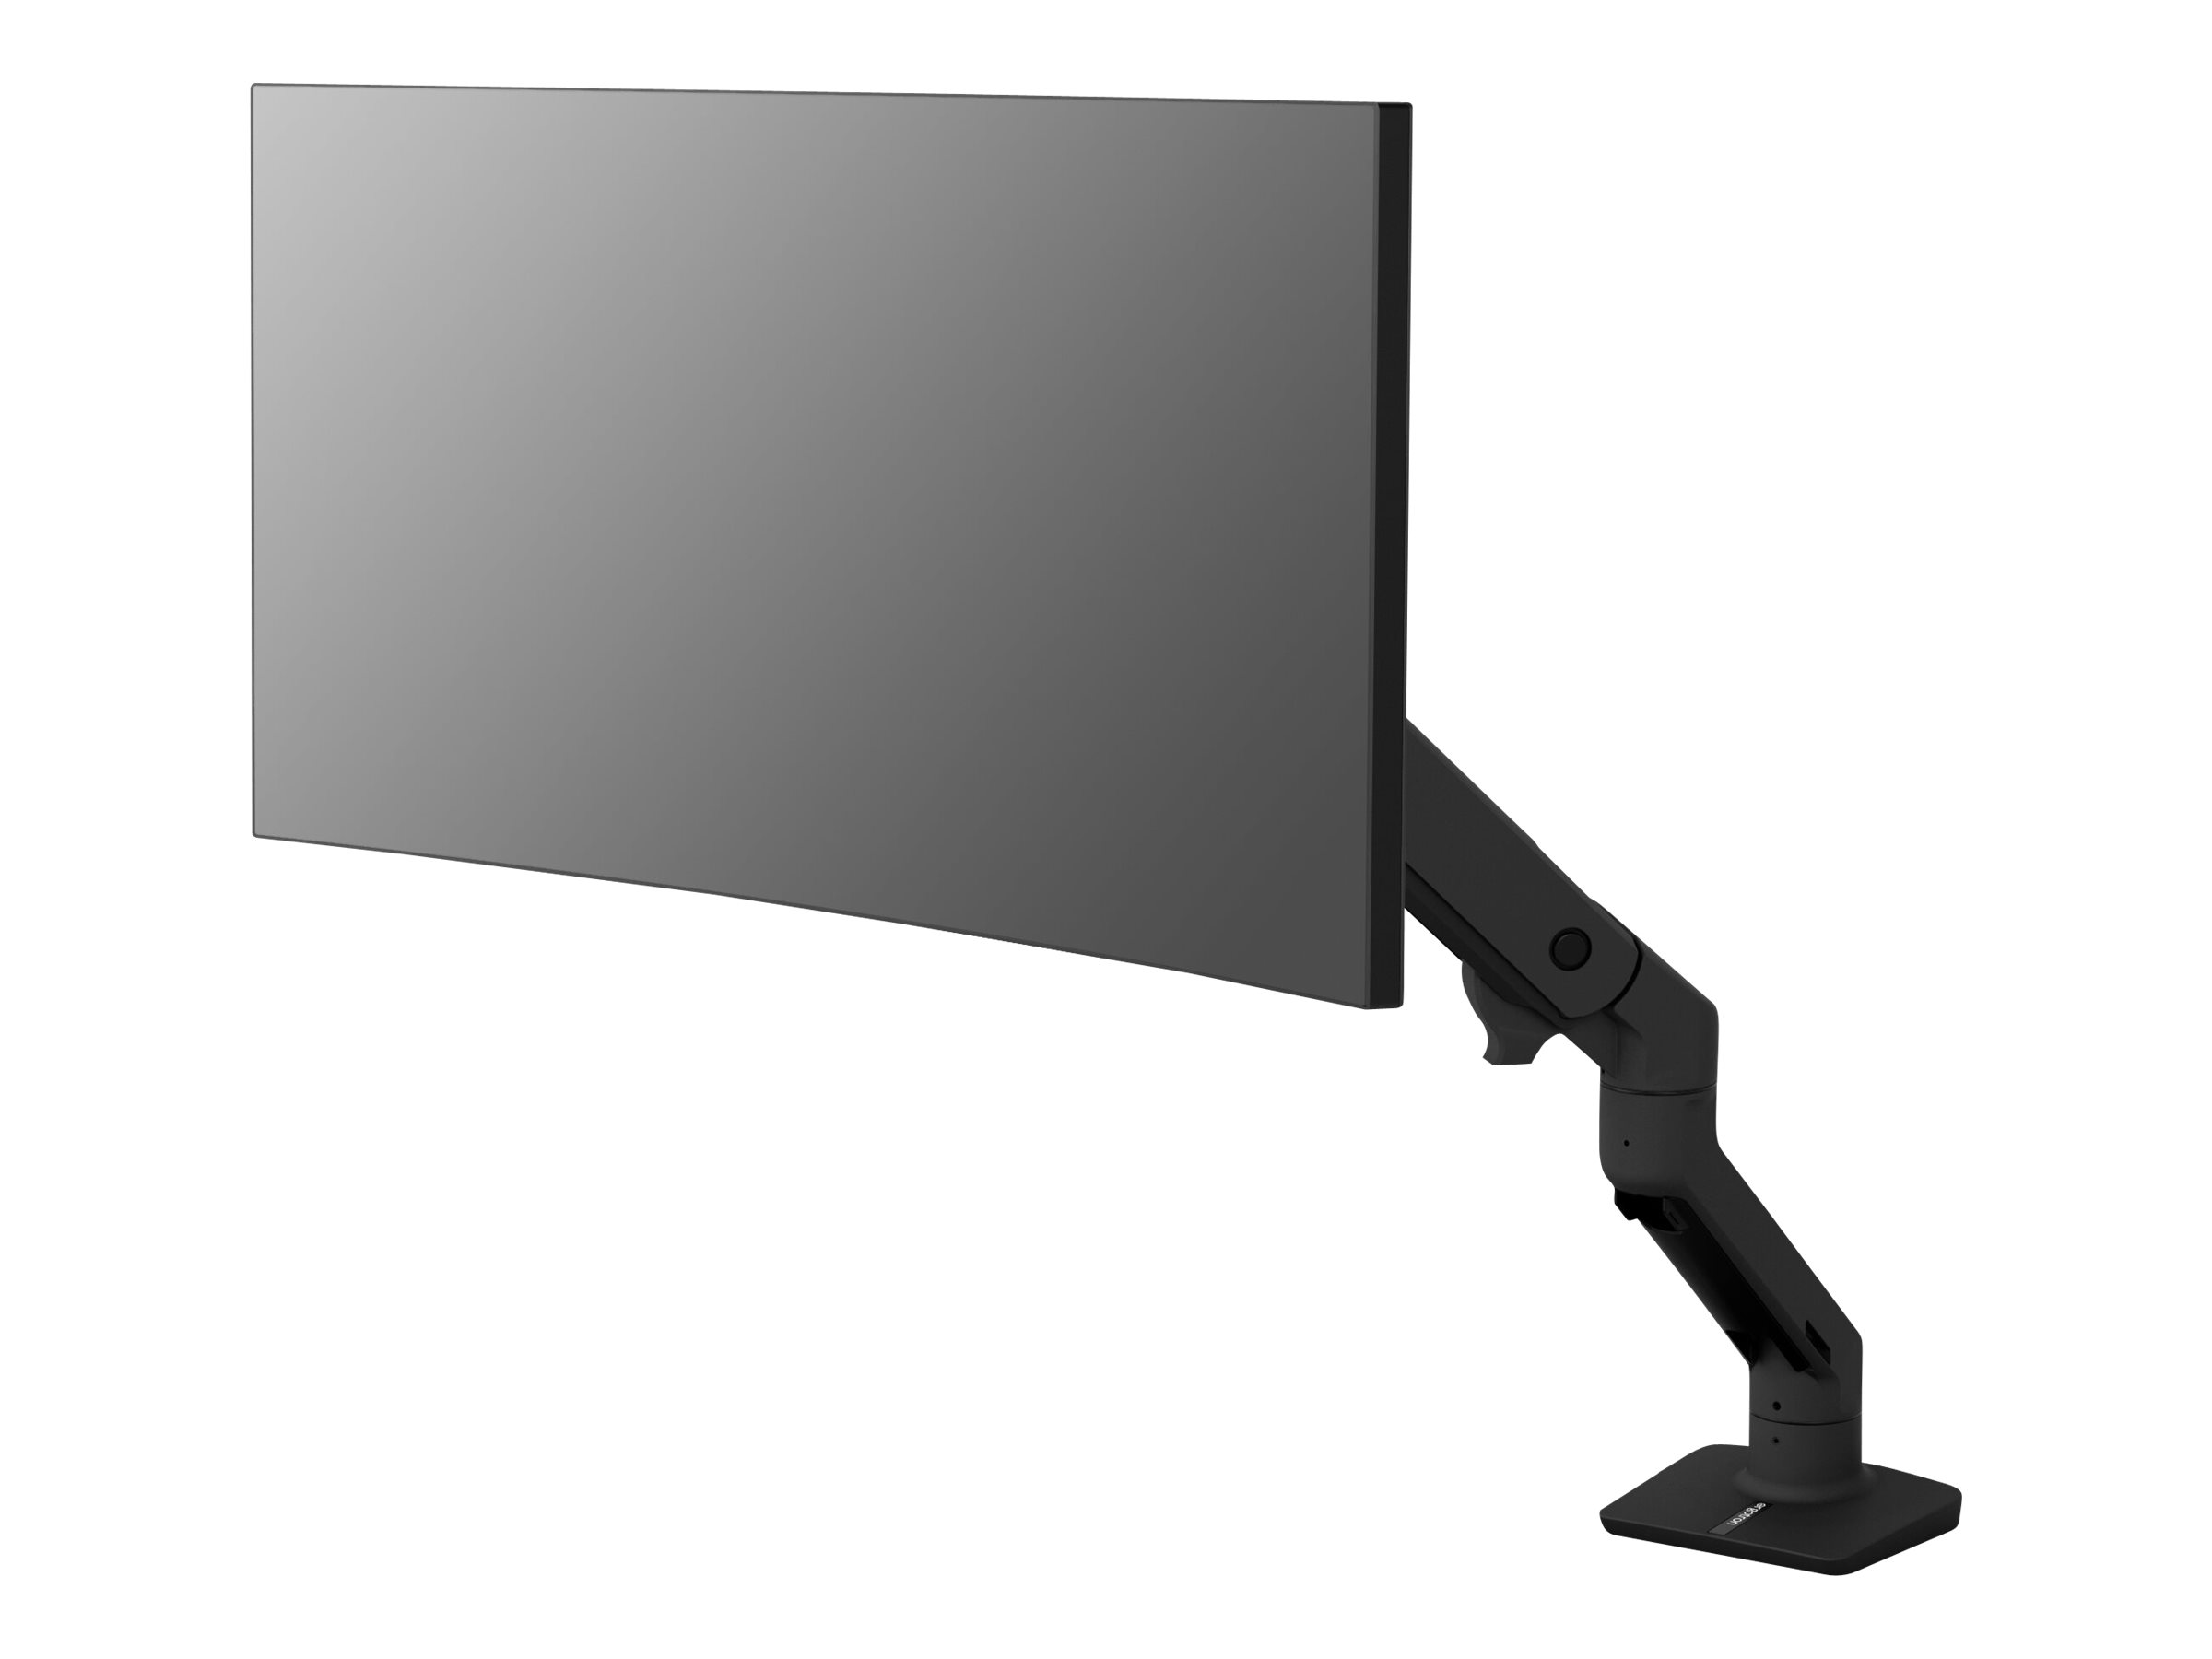 Ergotron HX - Befestigungskit (Gelenkarm, Spannbefestigung für Tisch, Verlängerungsarm, Tischplattenbohrung, Pivot) - Patentierte Constant Force Technologie - für LCD-Display / Curved LCD-Display - mattschwarz - Bildschirmgröße: 124.5 cm (up to 49")